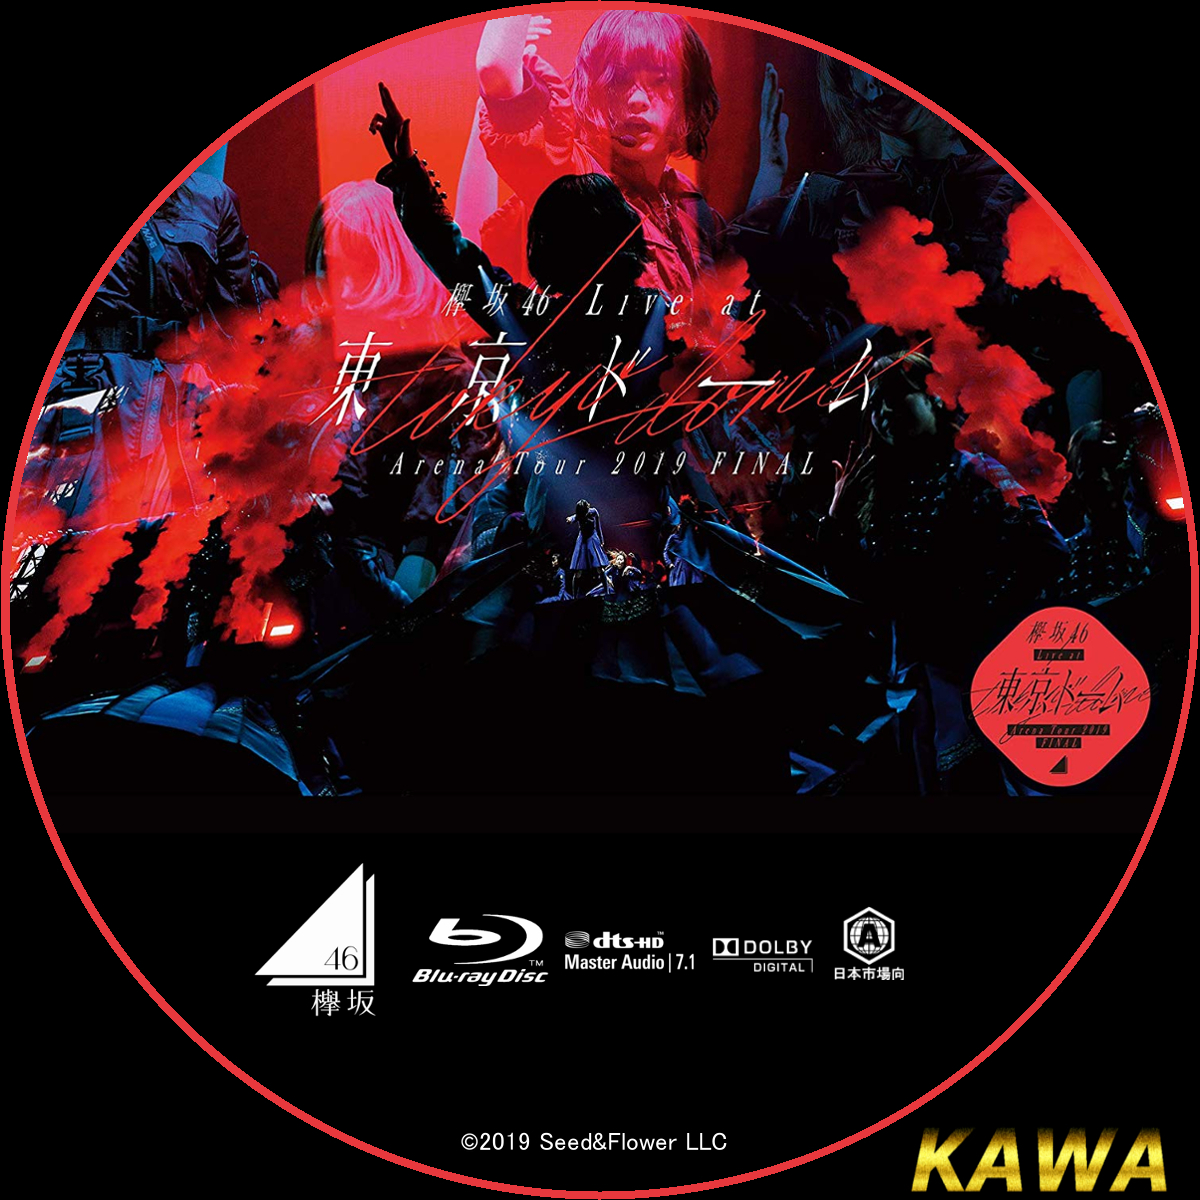 欅坂46東京ドーム2019 FINAL初回生産限定盤Blu-rayDVD/ブルーレイ 